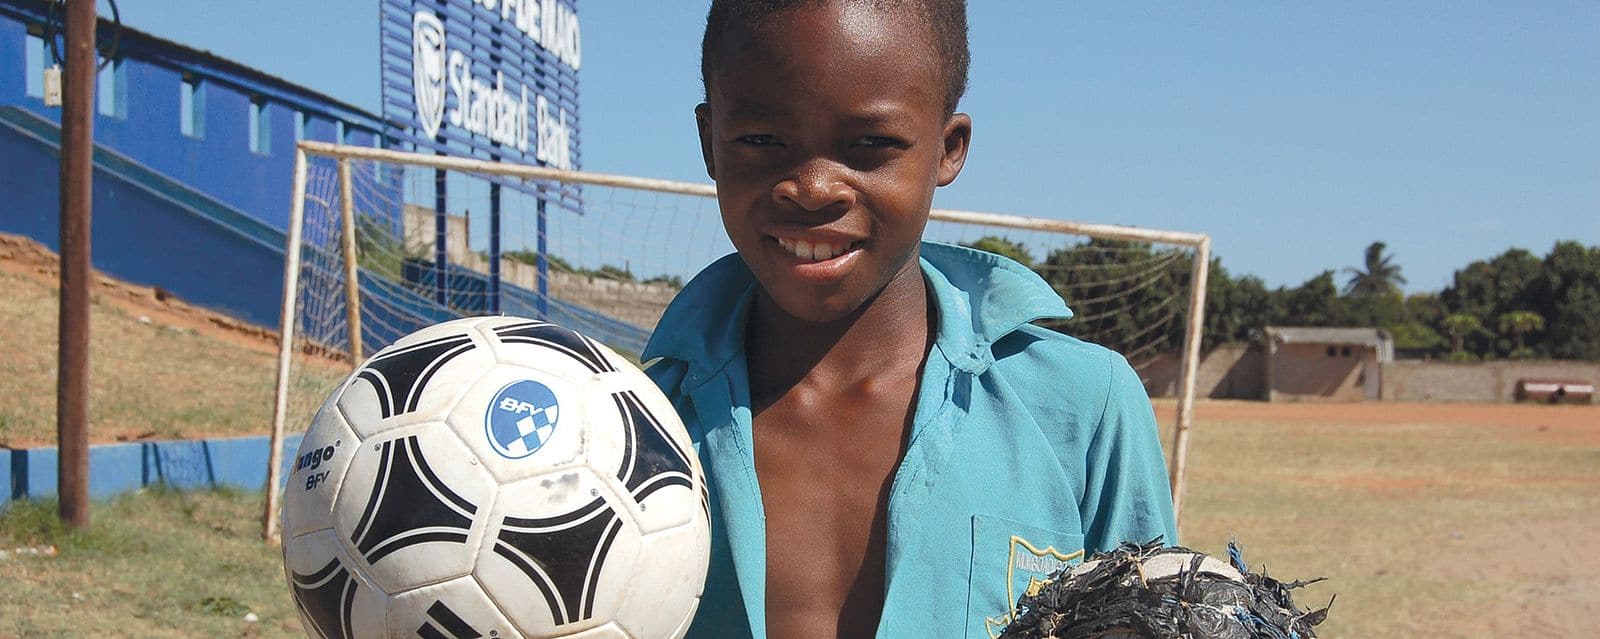 BFV-Sozialstiftung; mosambikanischer Junge mit normalem und selbstgebautem Fußball in der Hand